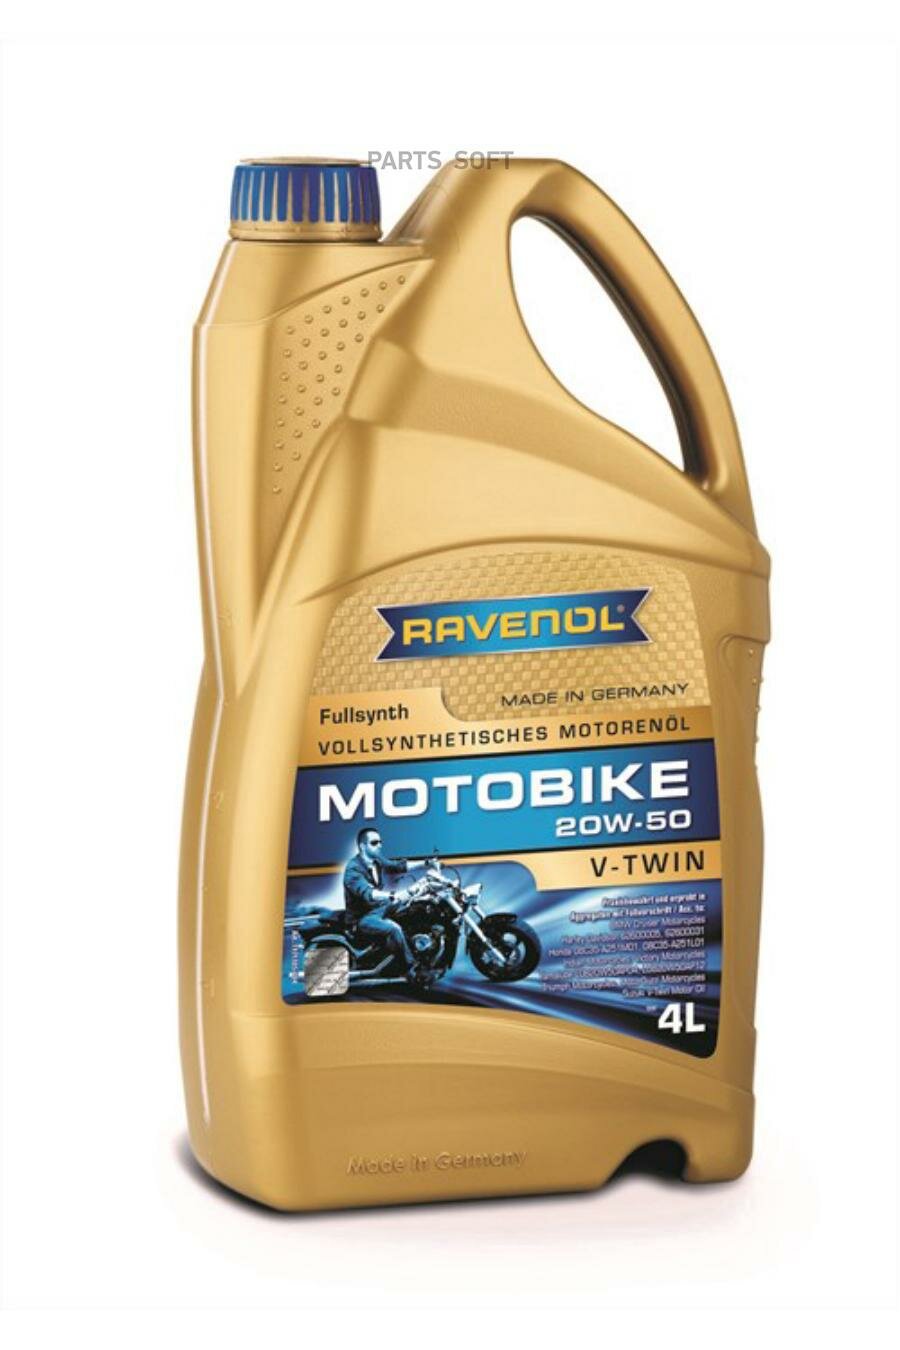 Моторное масло RAVENOL Motobike V-Twin SAE 20W-50 Fullsynth (4л) new RAVENOL / арт. 117110500401999 - (1 шт)